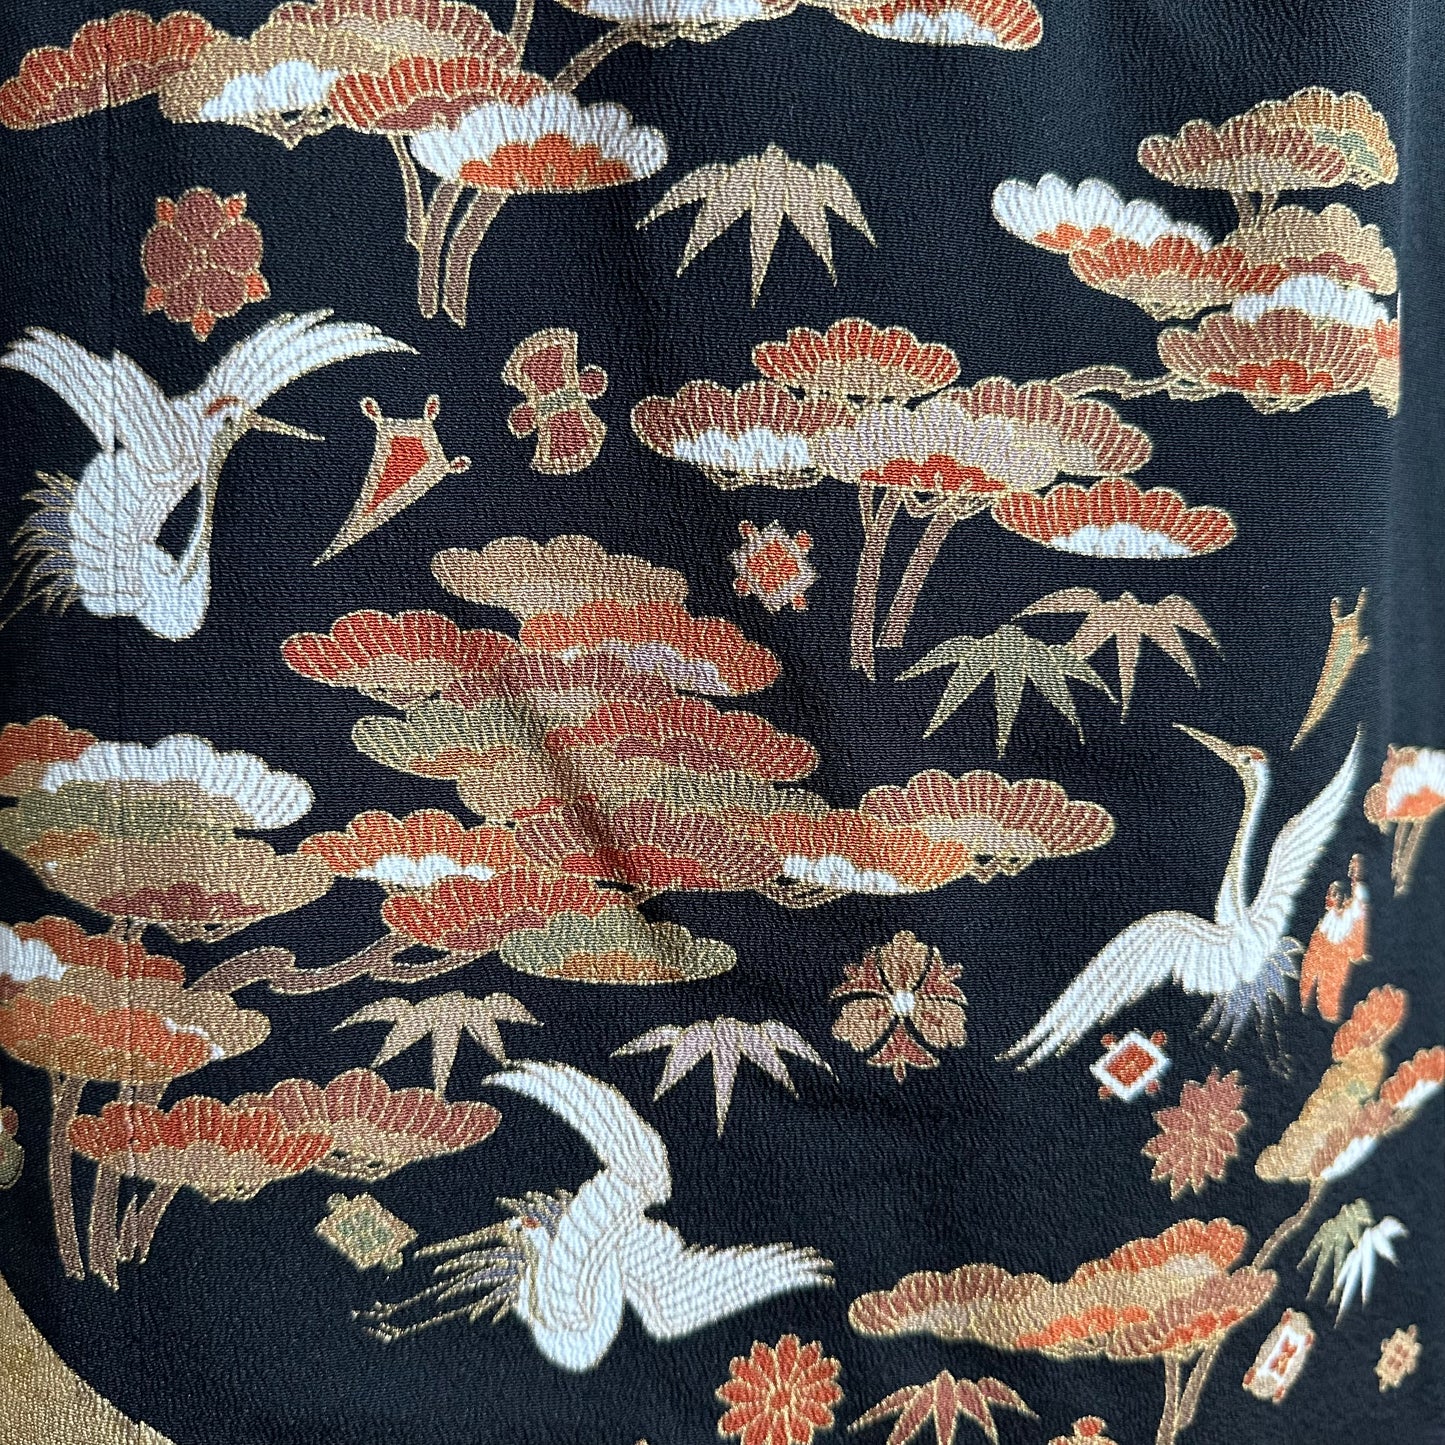 Kimono jupe en soie, Tomesode 黒留袖, fabriquée à la main, recyclée, Grues